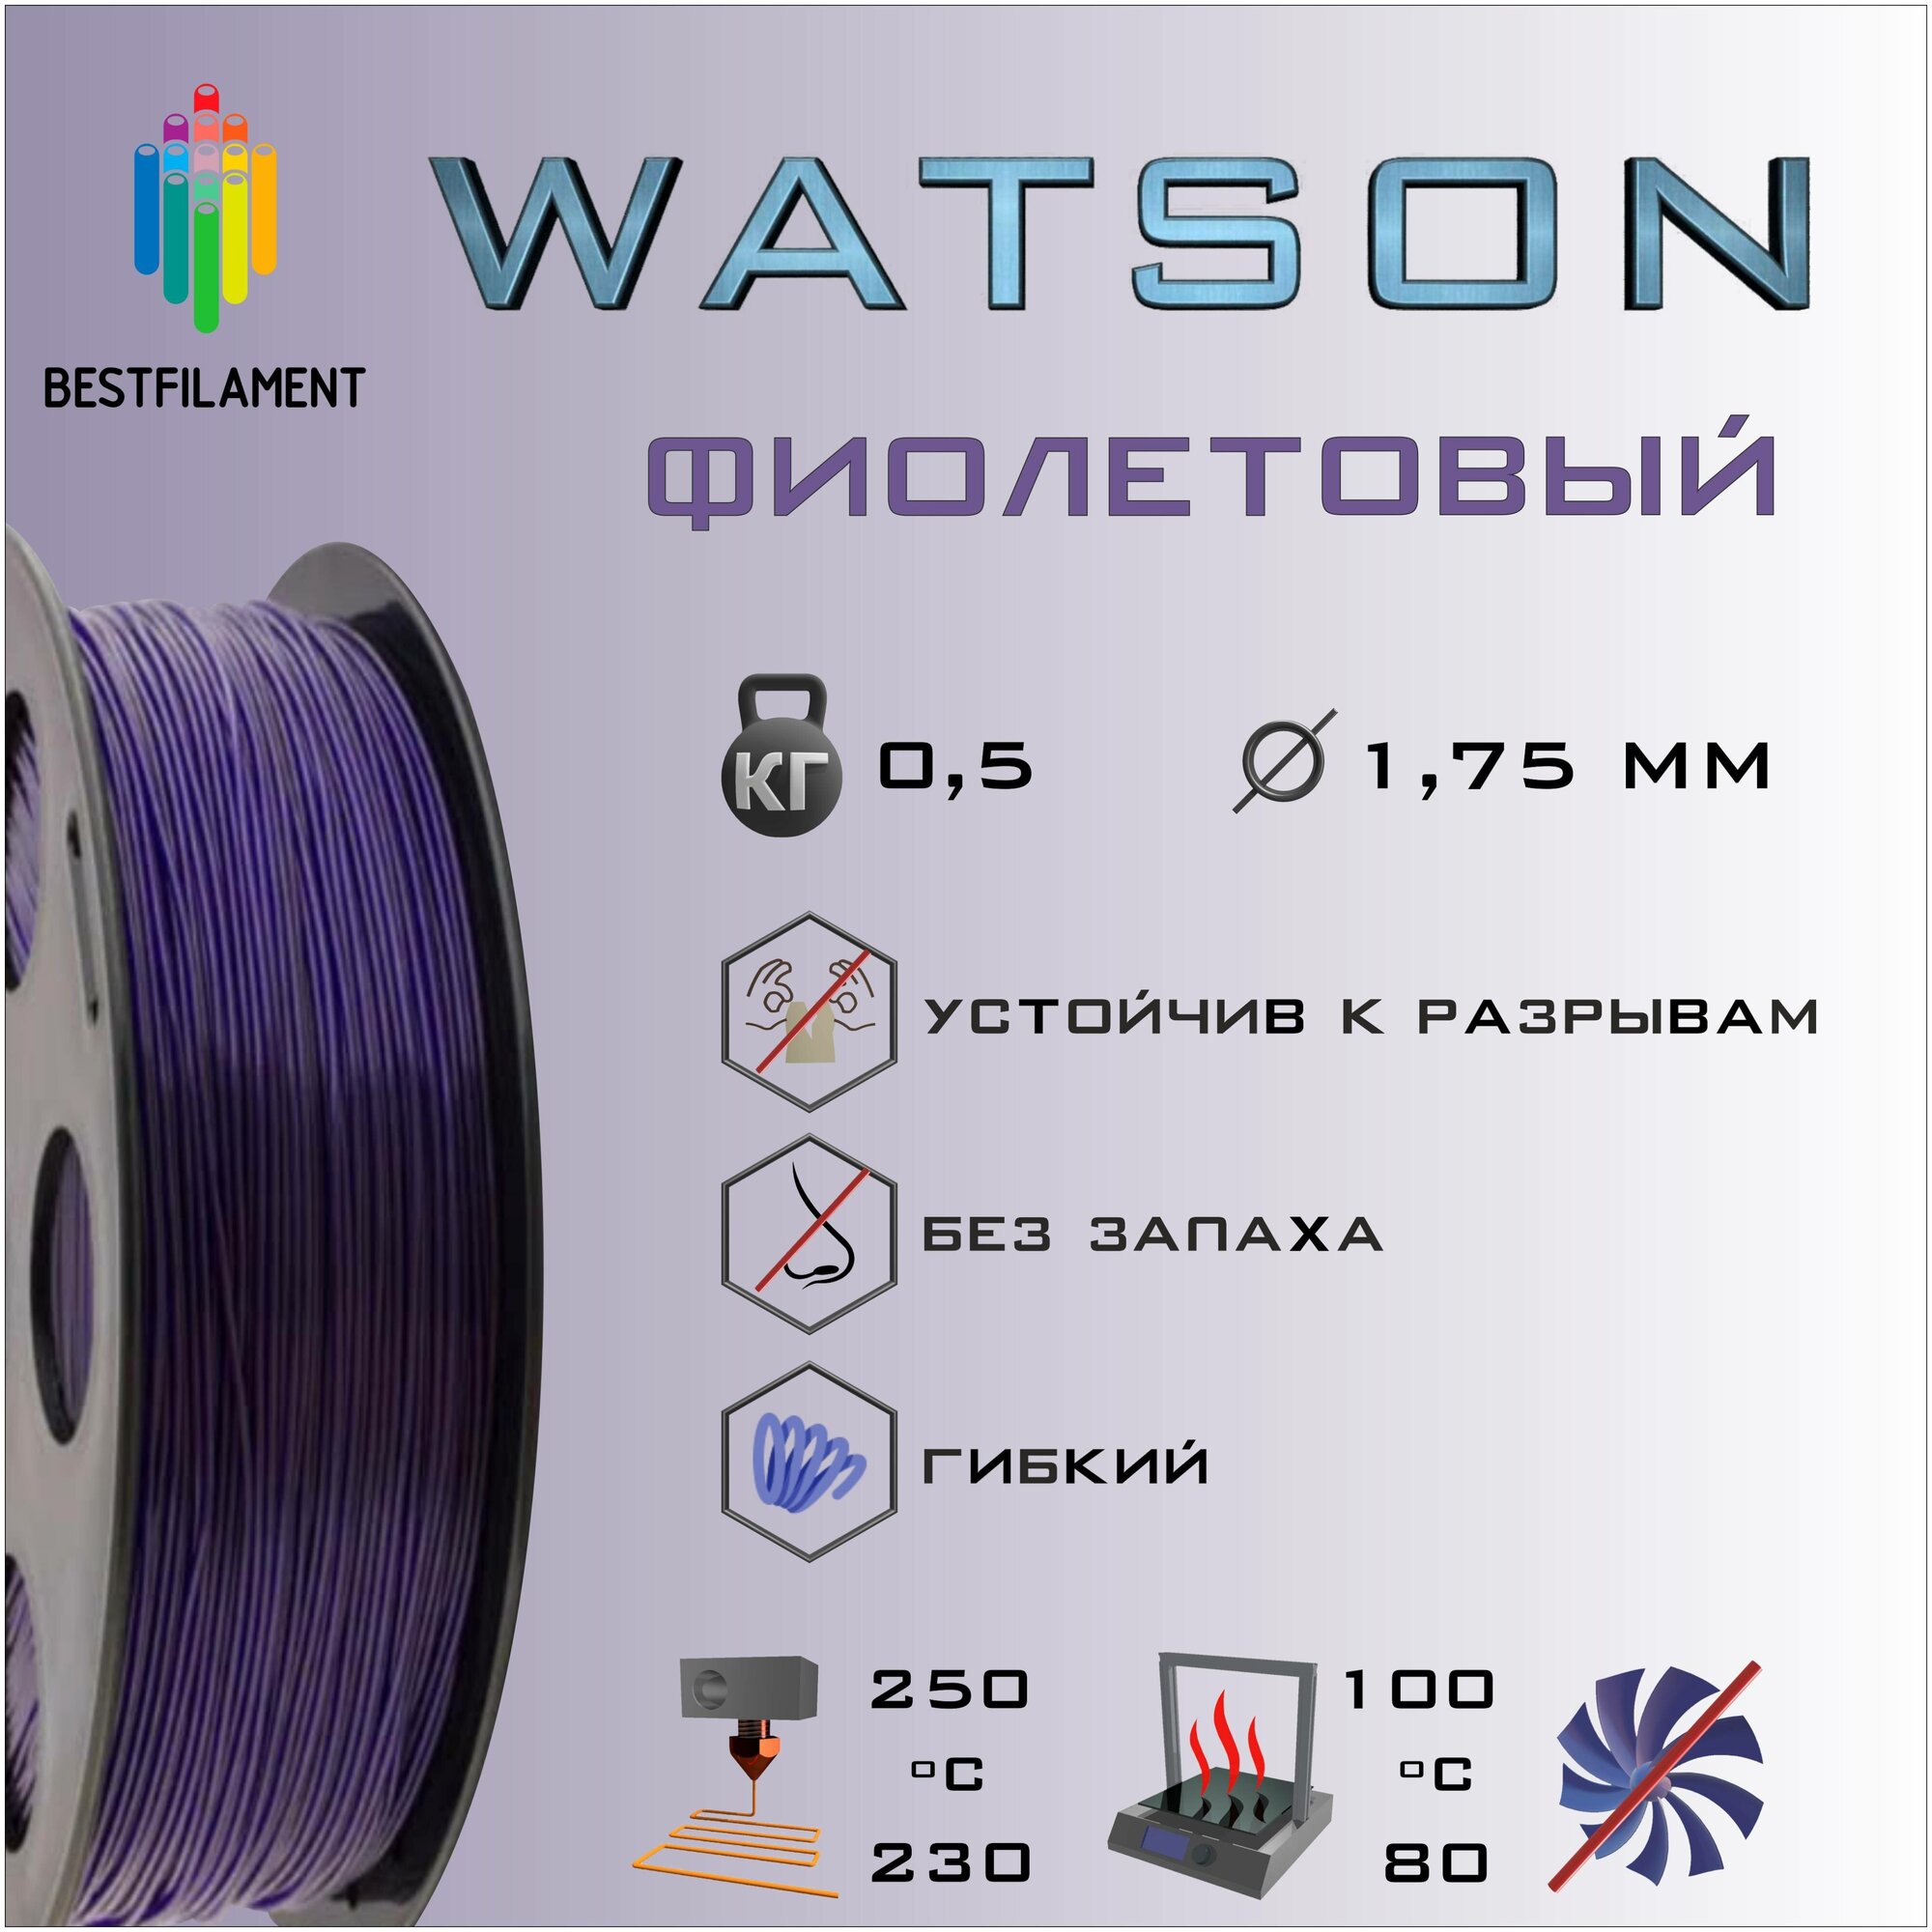 SBS Watson Фиолетовый 500 гр. 1.75 мм пластик Bestfilament для 3D-принтера